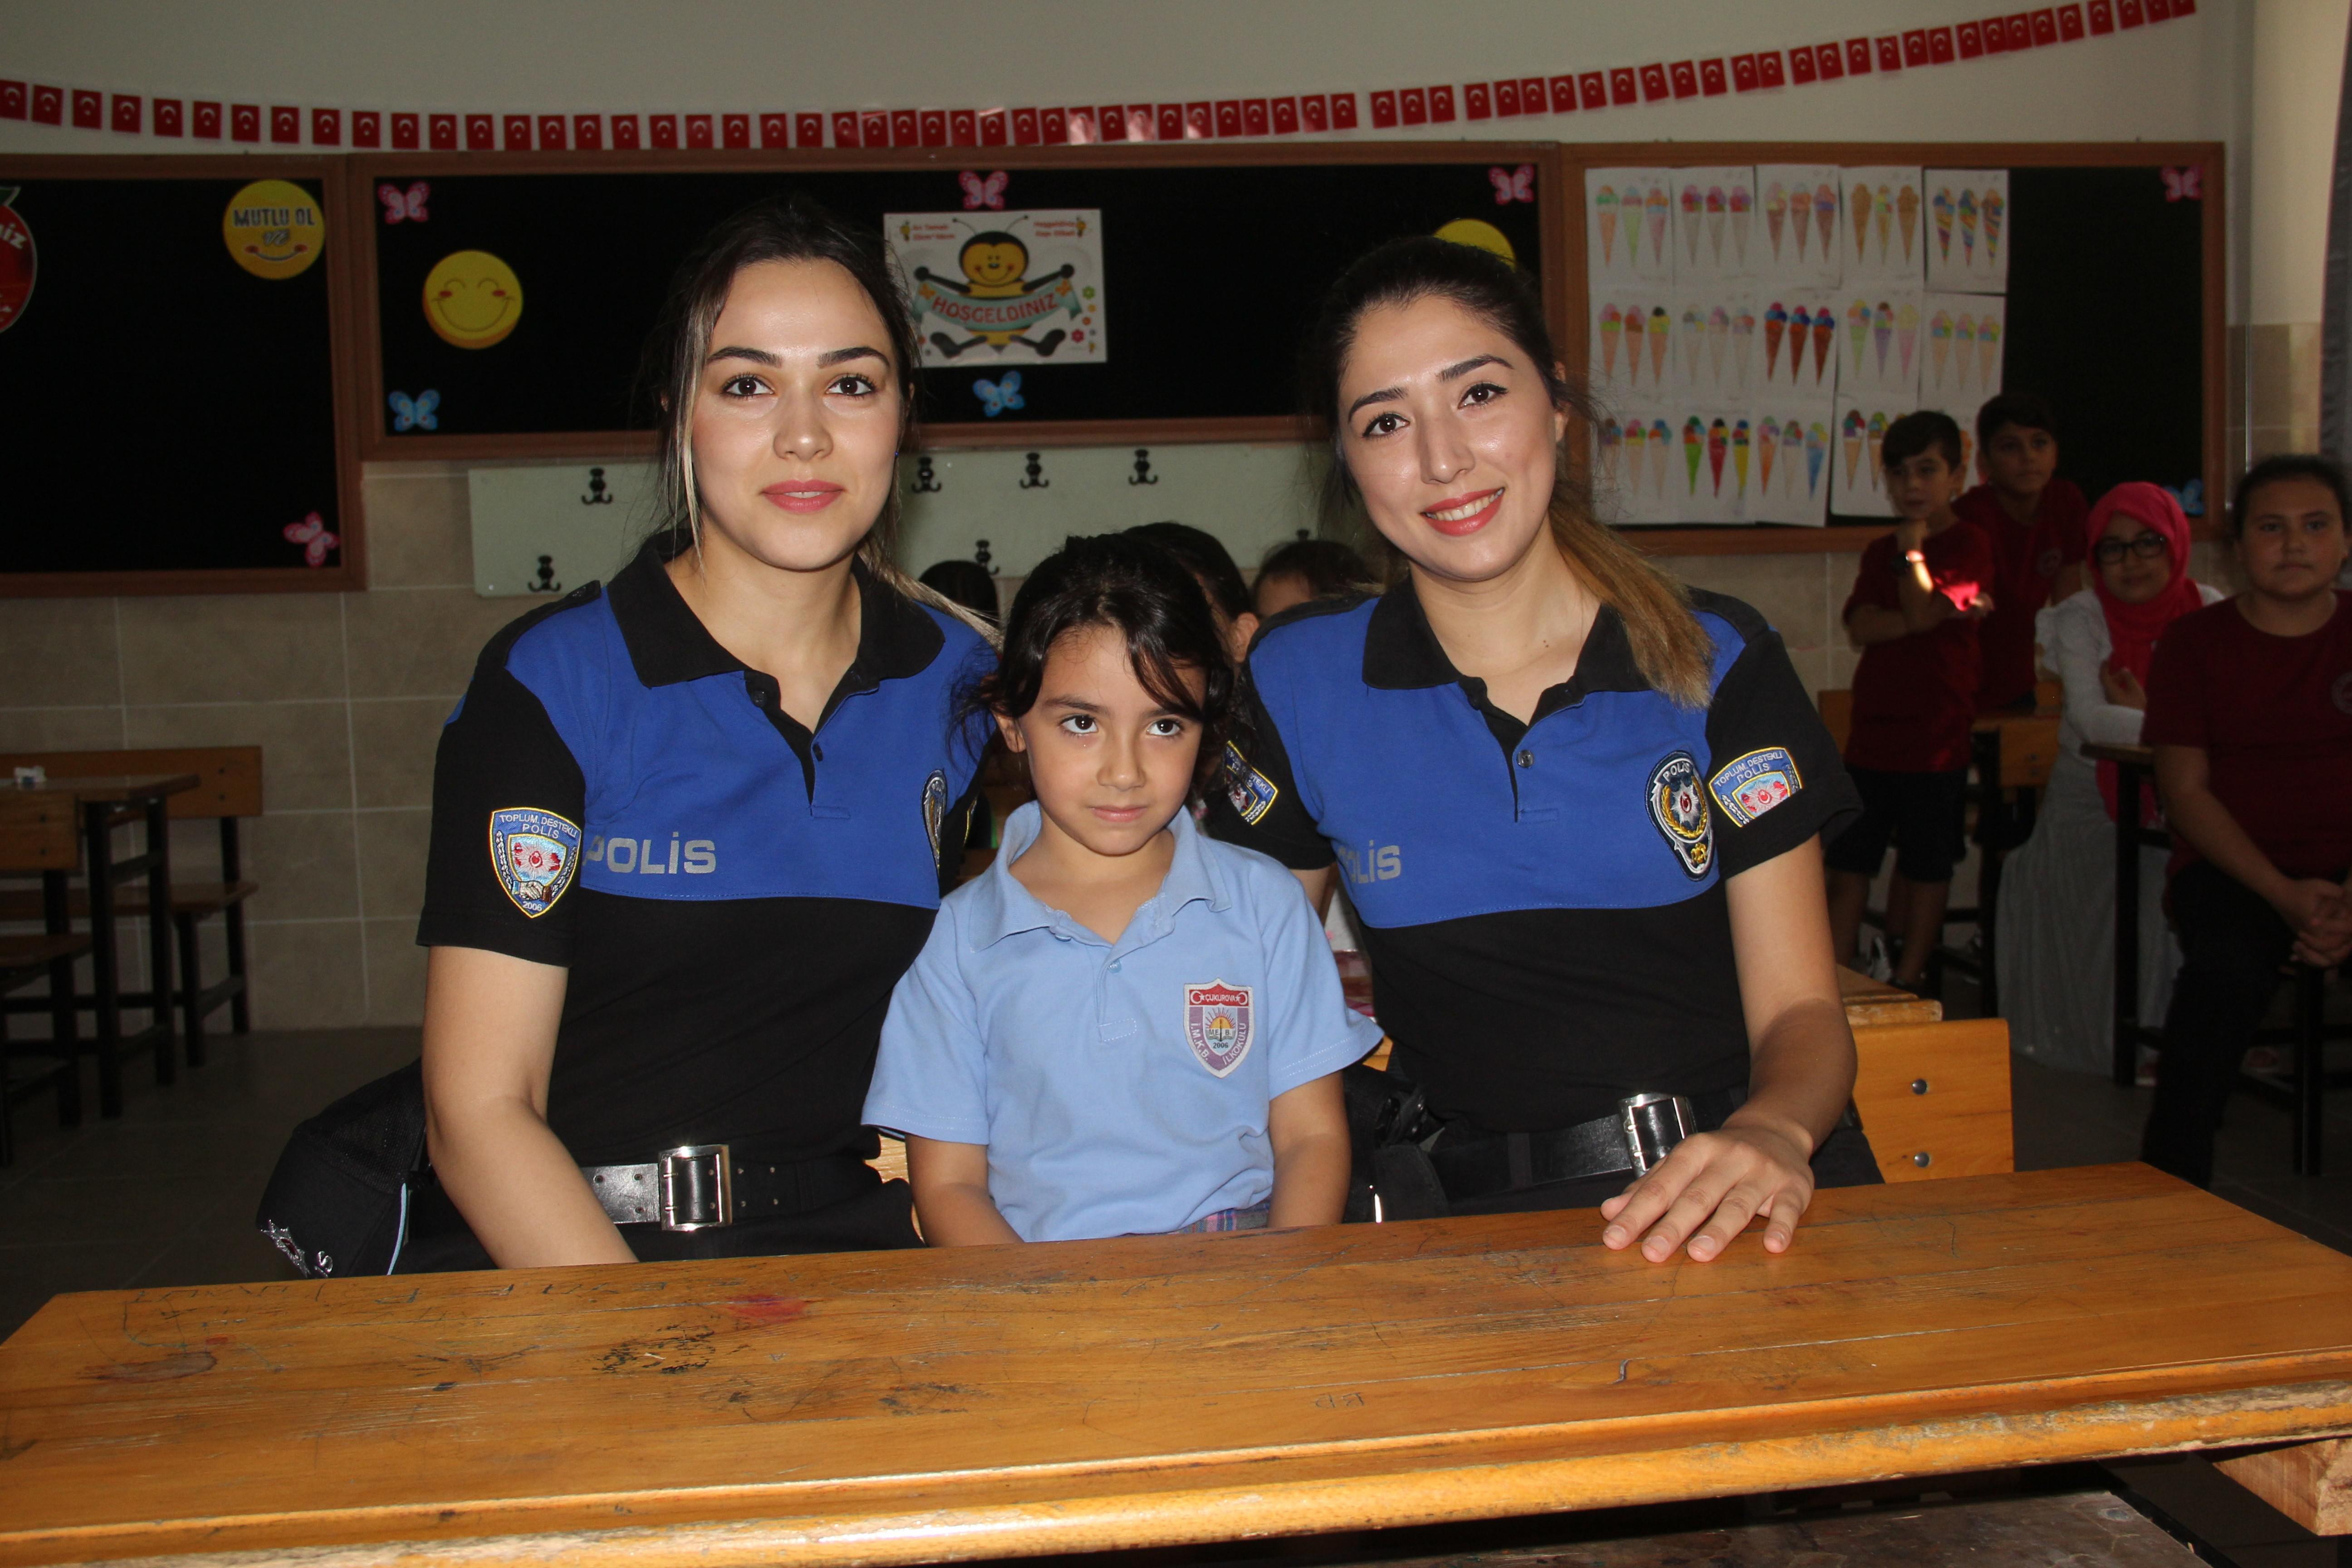 Şehit kızı Zeynep Ravza Akyüzü okula babasının meslektaşı polisler götürdü